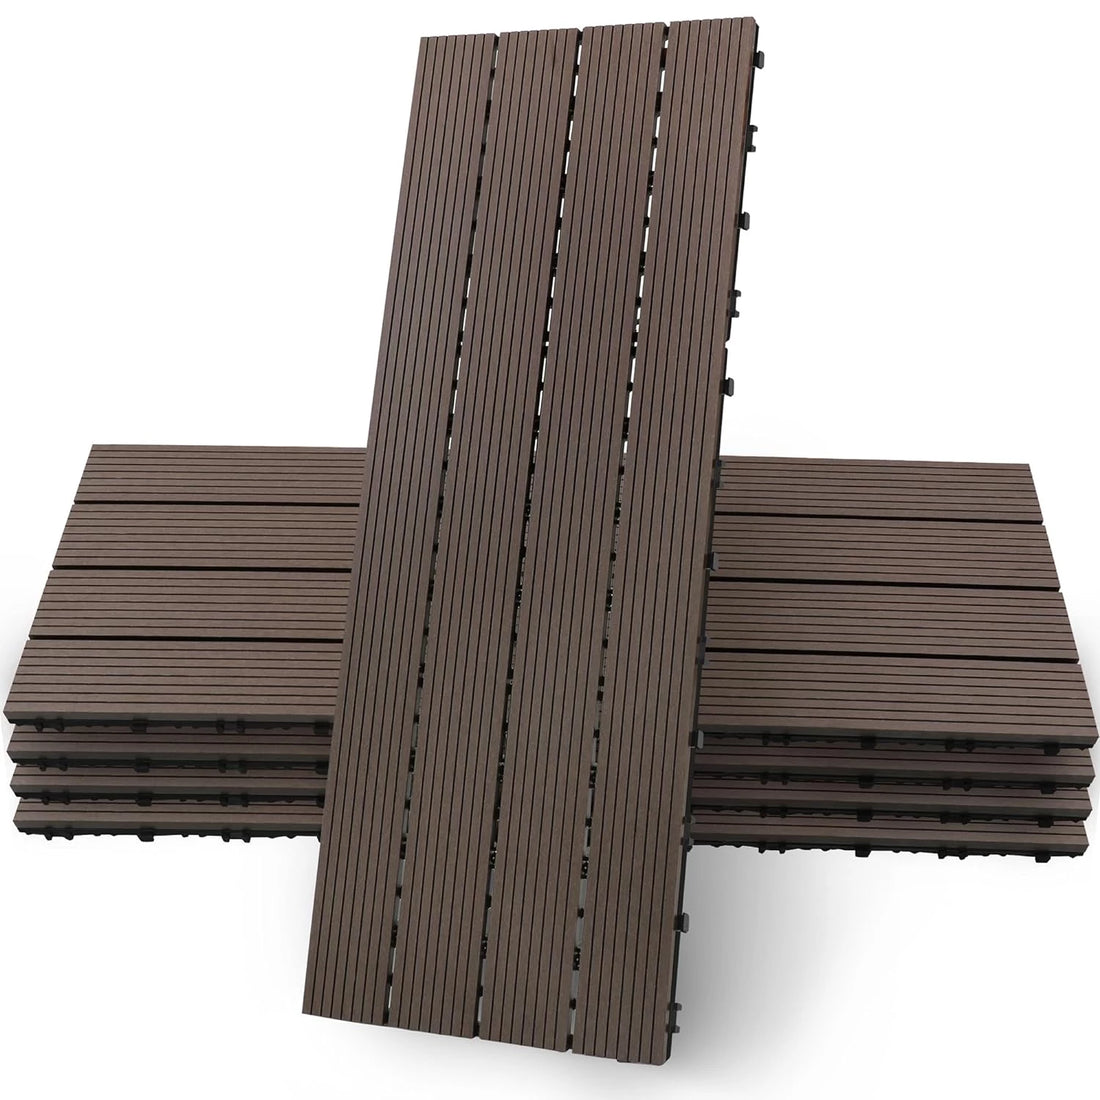 Wood Composite Interlocking Floor Deck Tiles Indoor Outdoor Use 12"x36" (5Pcs, 15 sq. Ft, Brown)